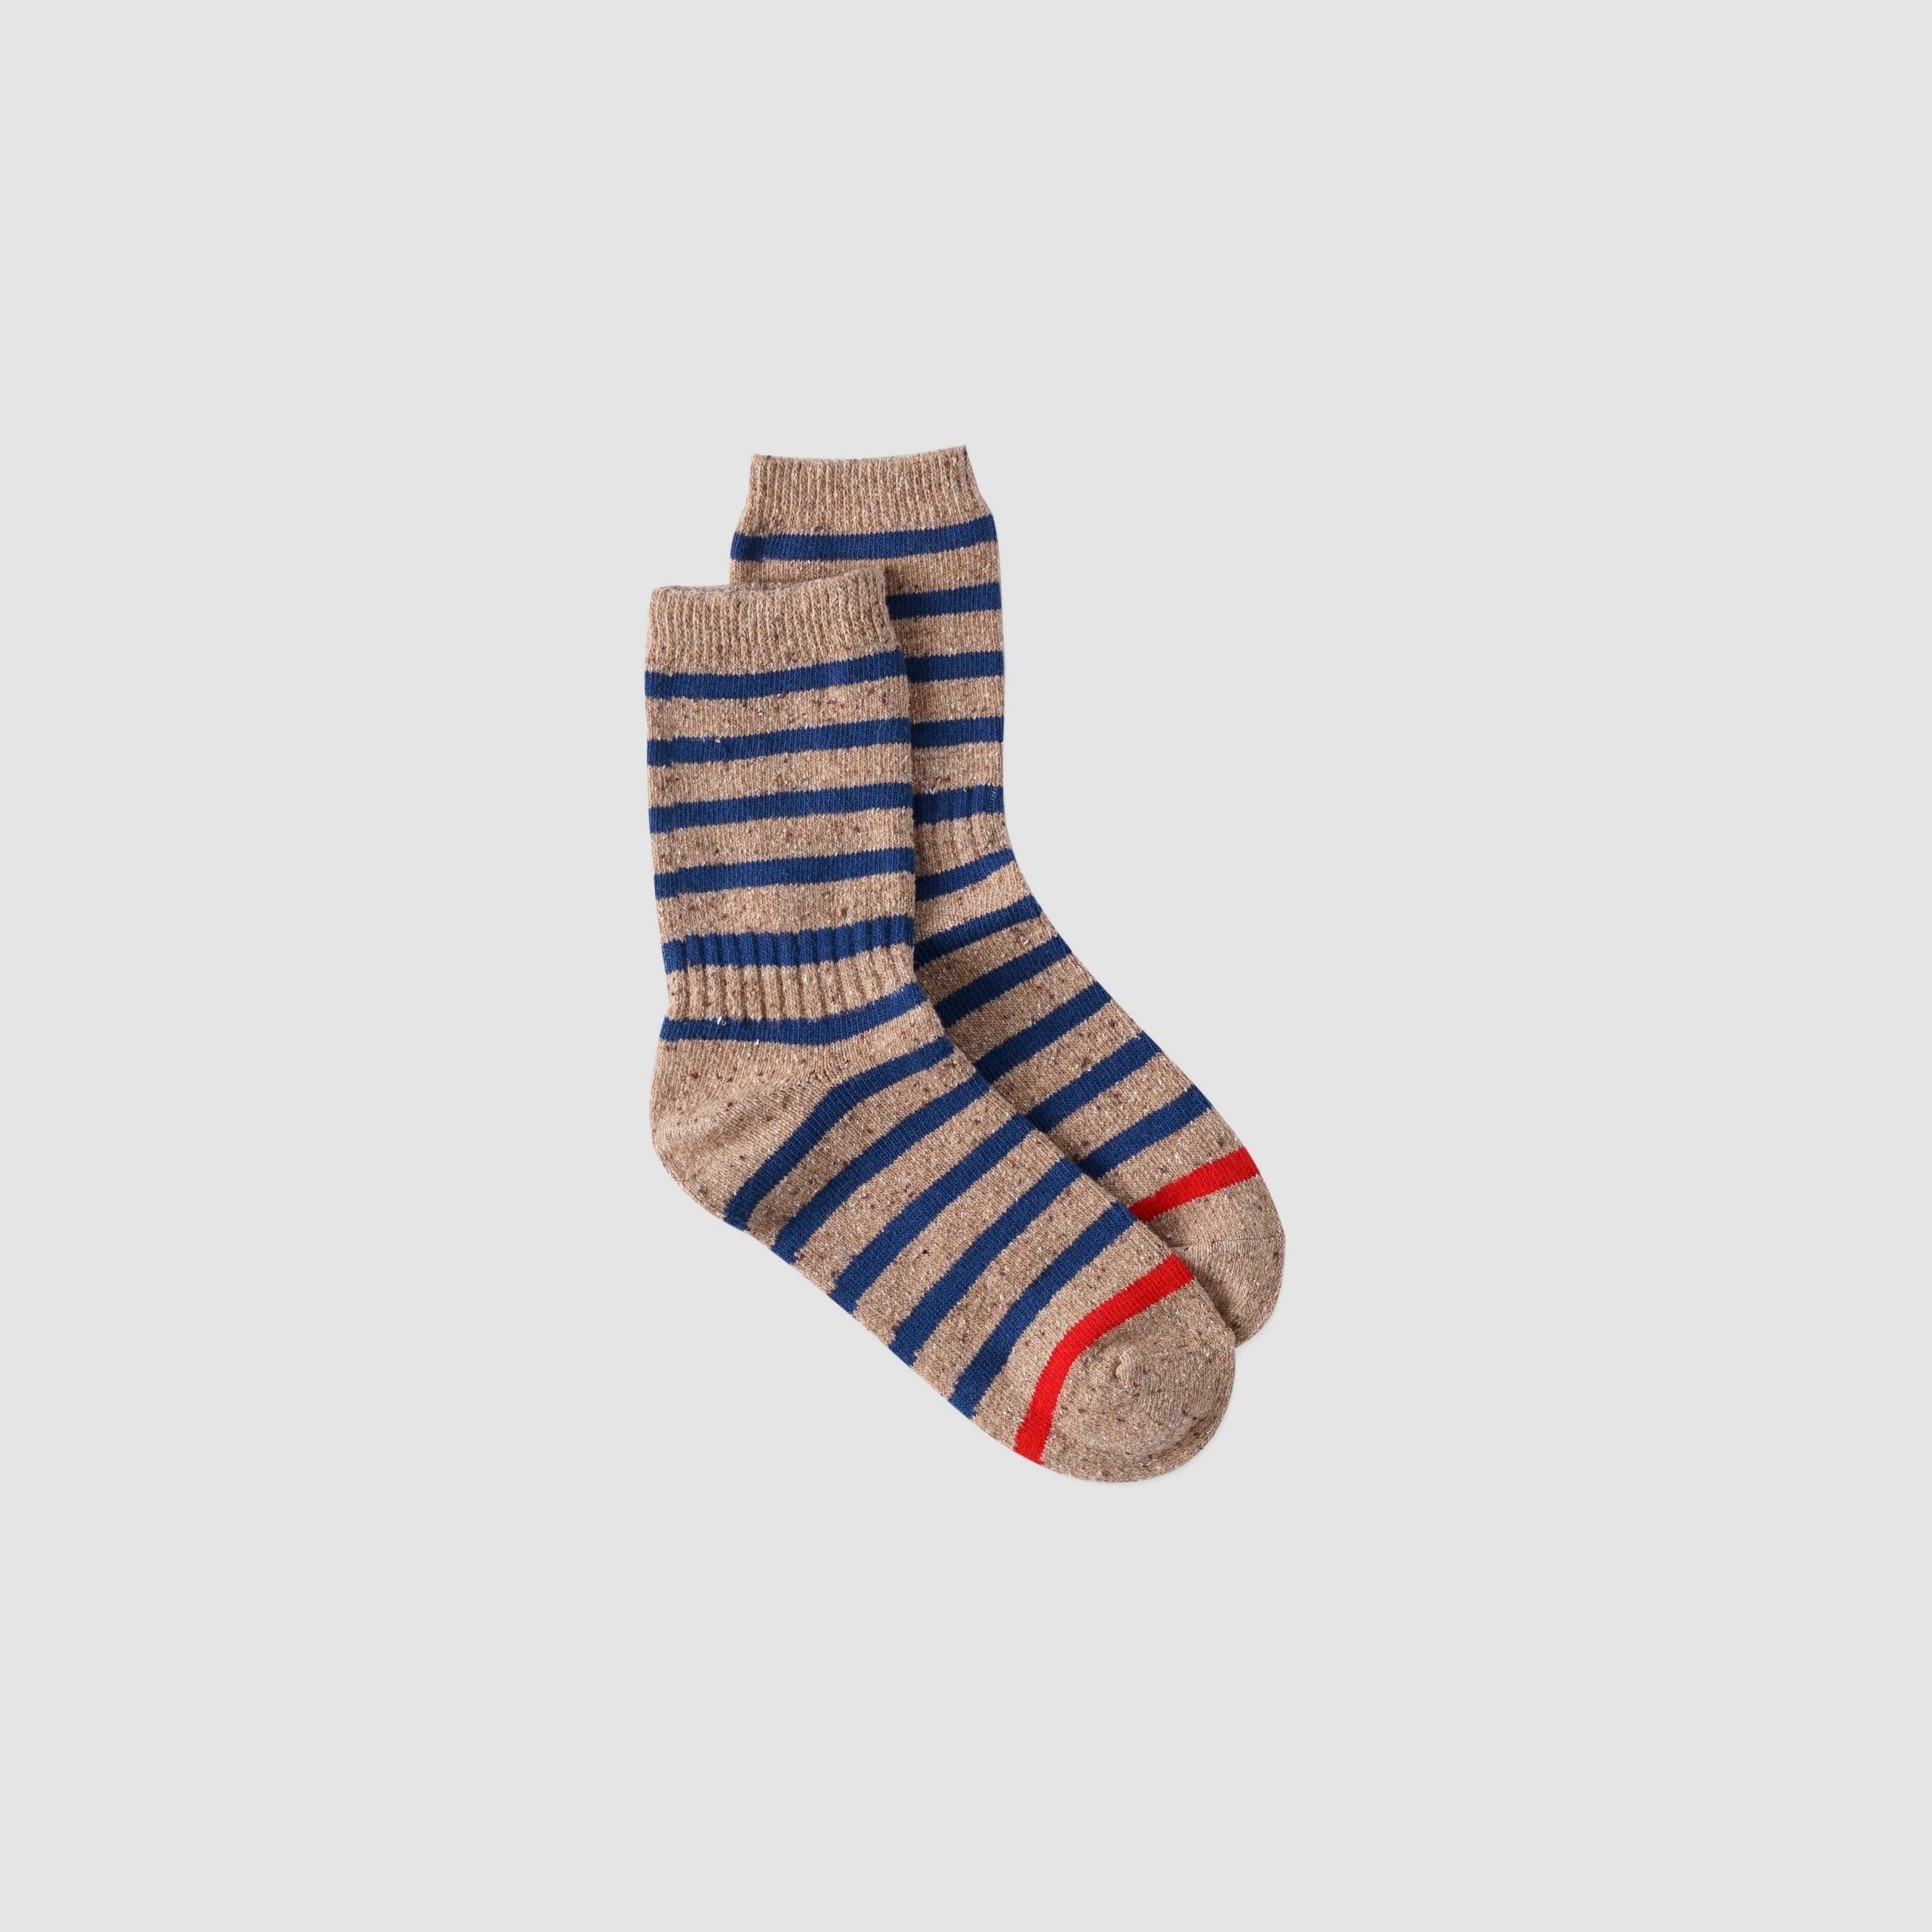 Maruchi Socks - Magenta Vintage